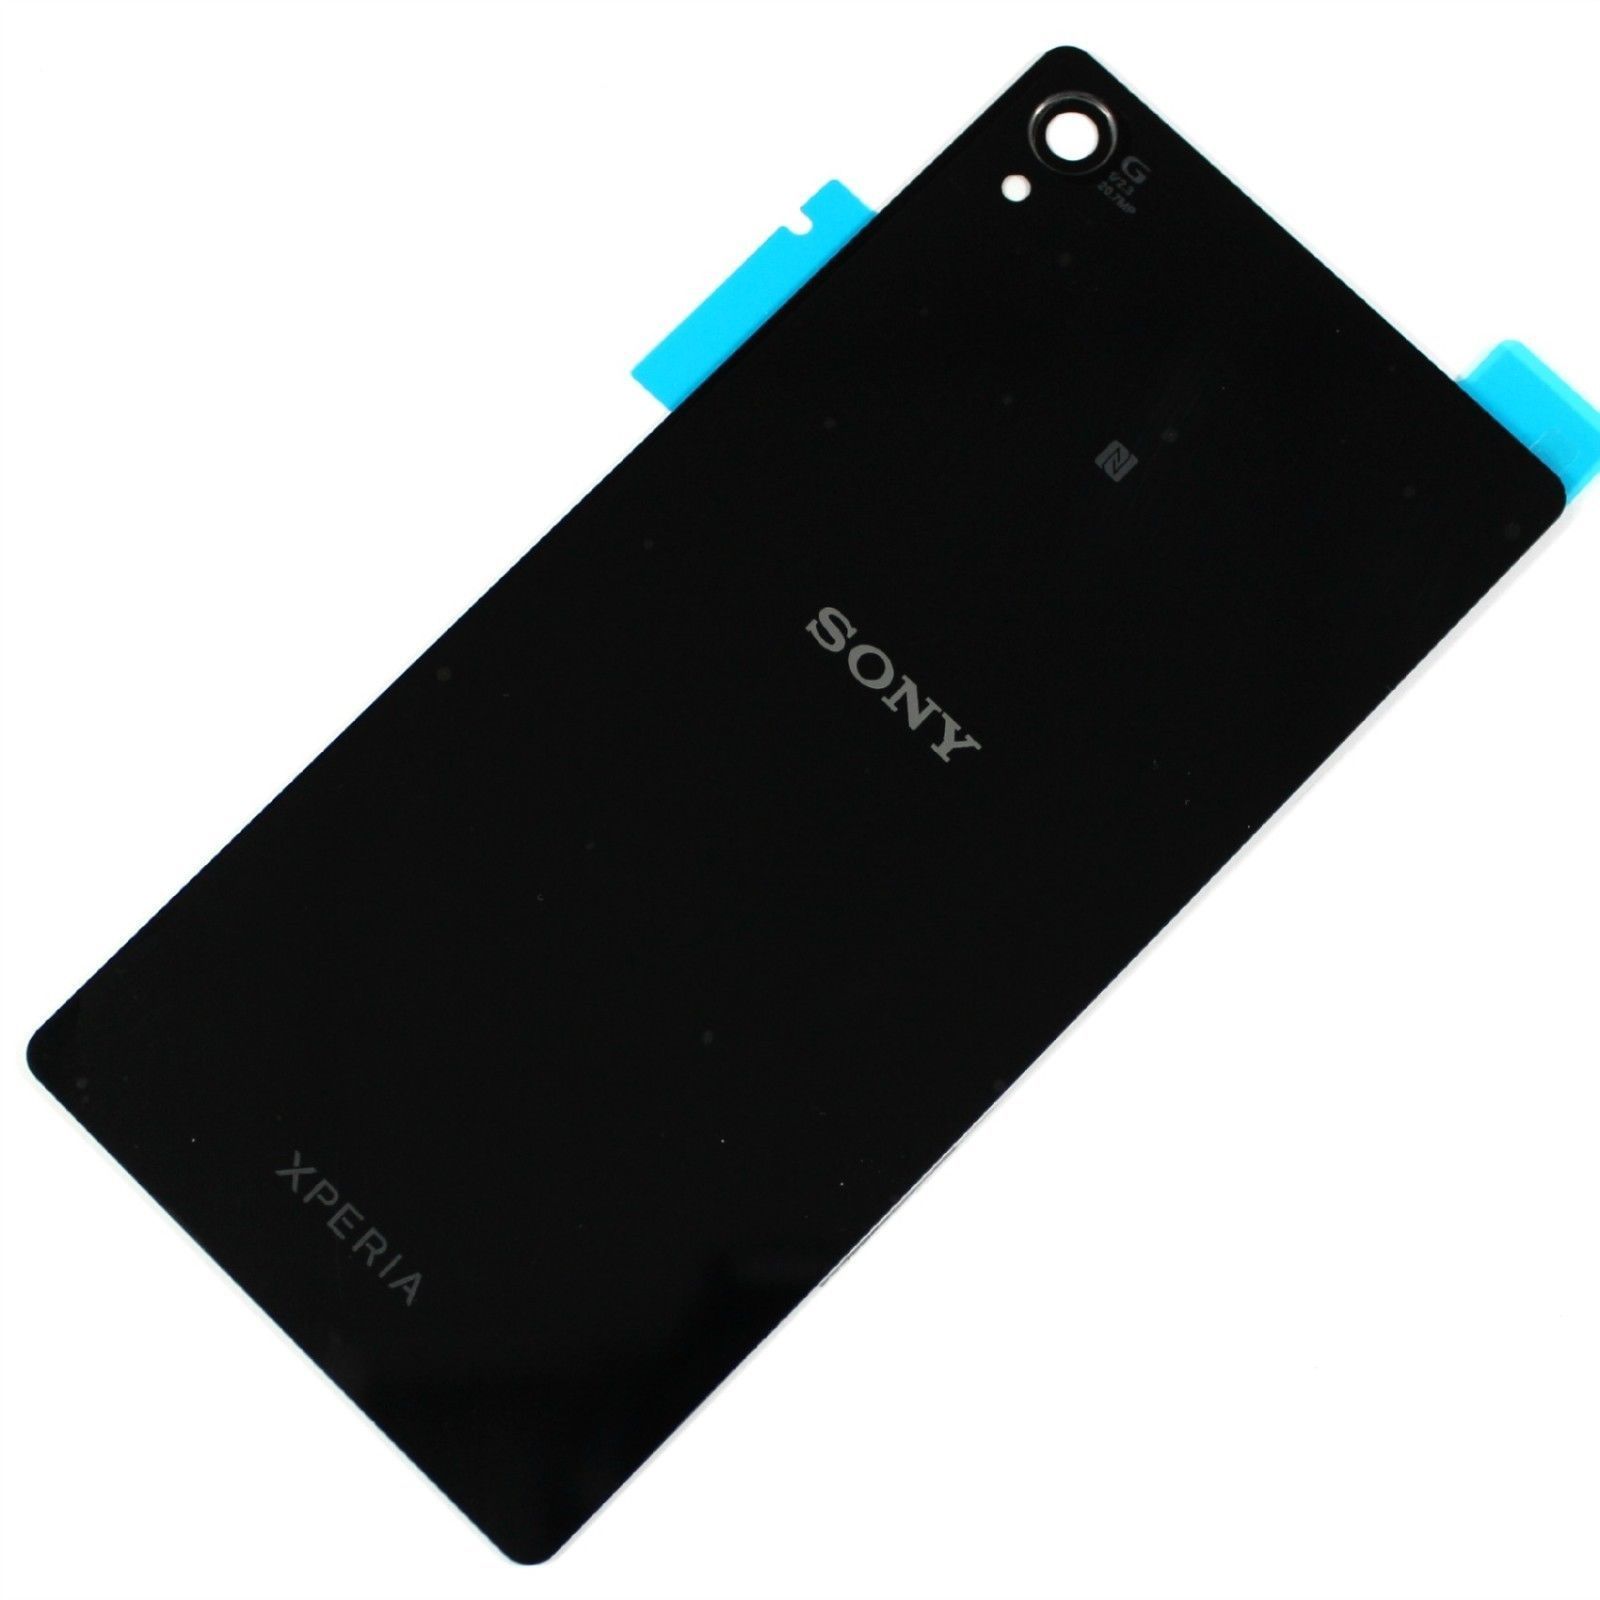 Sony Xperia Z3 back cover black